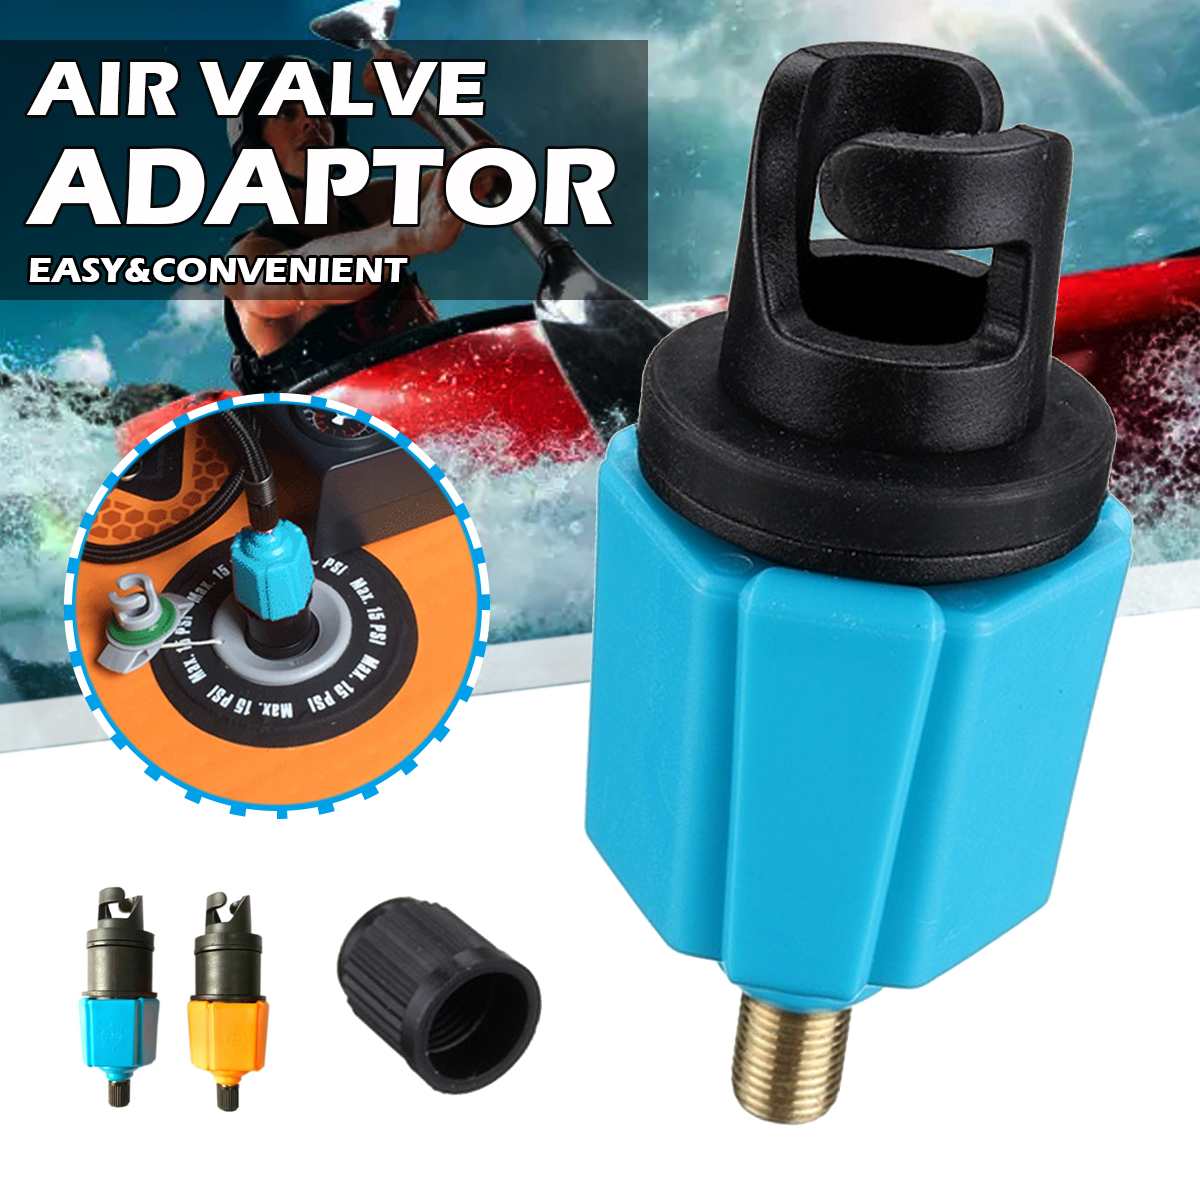 Air Valve Adapter Voor Fiets Pomp Inflator Opblaasbare Boot Sup Pomp Adapter Adapter Air Valve Paddle Board Accessoires